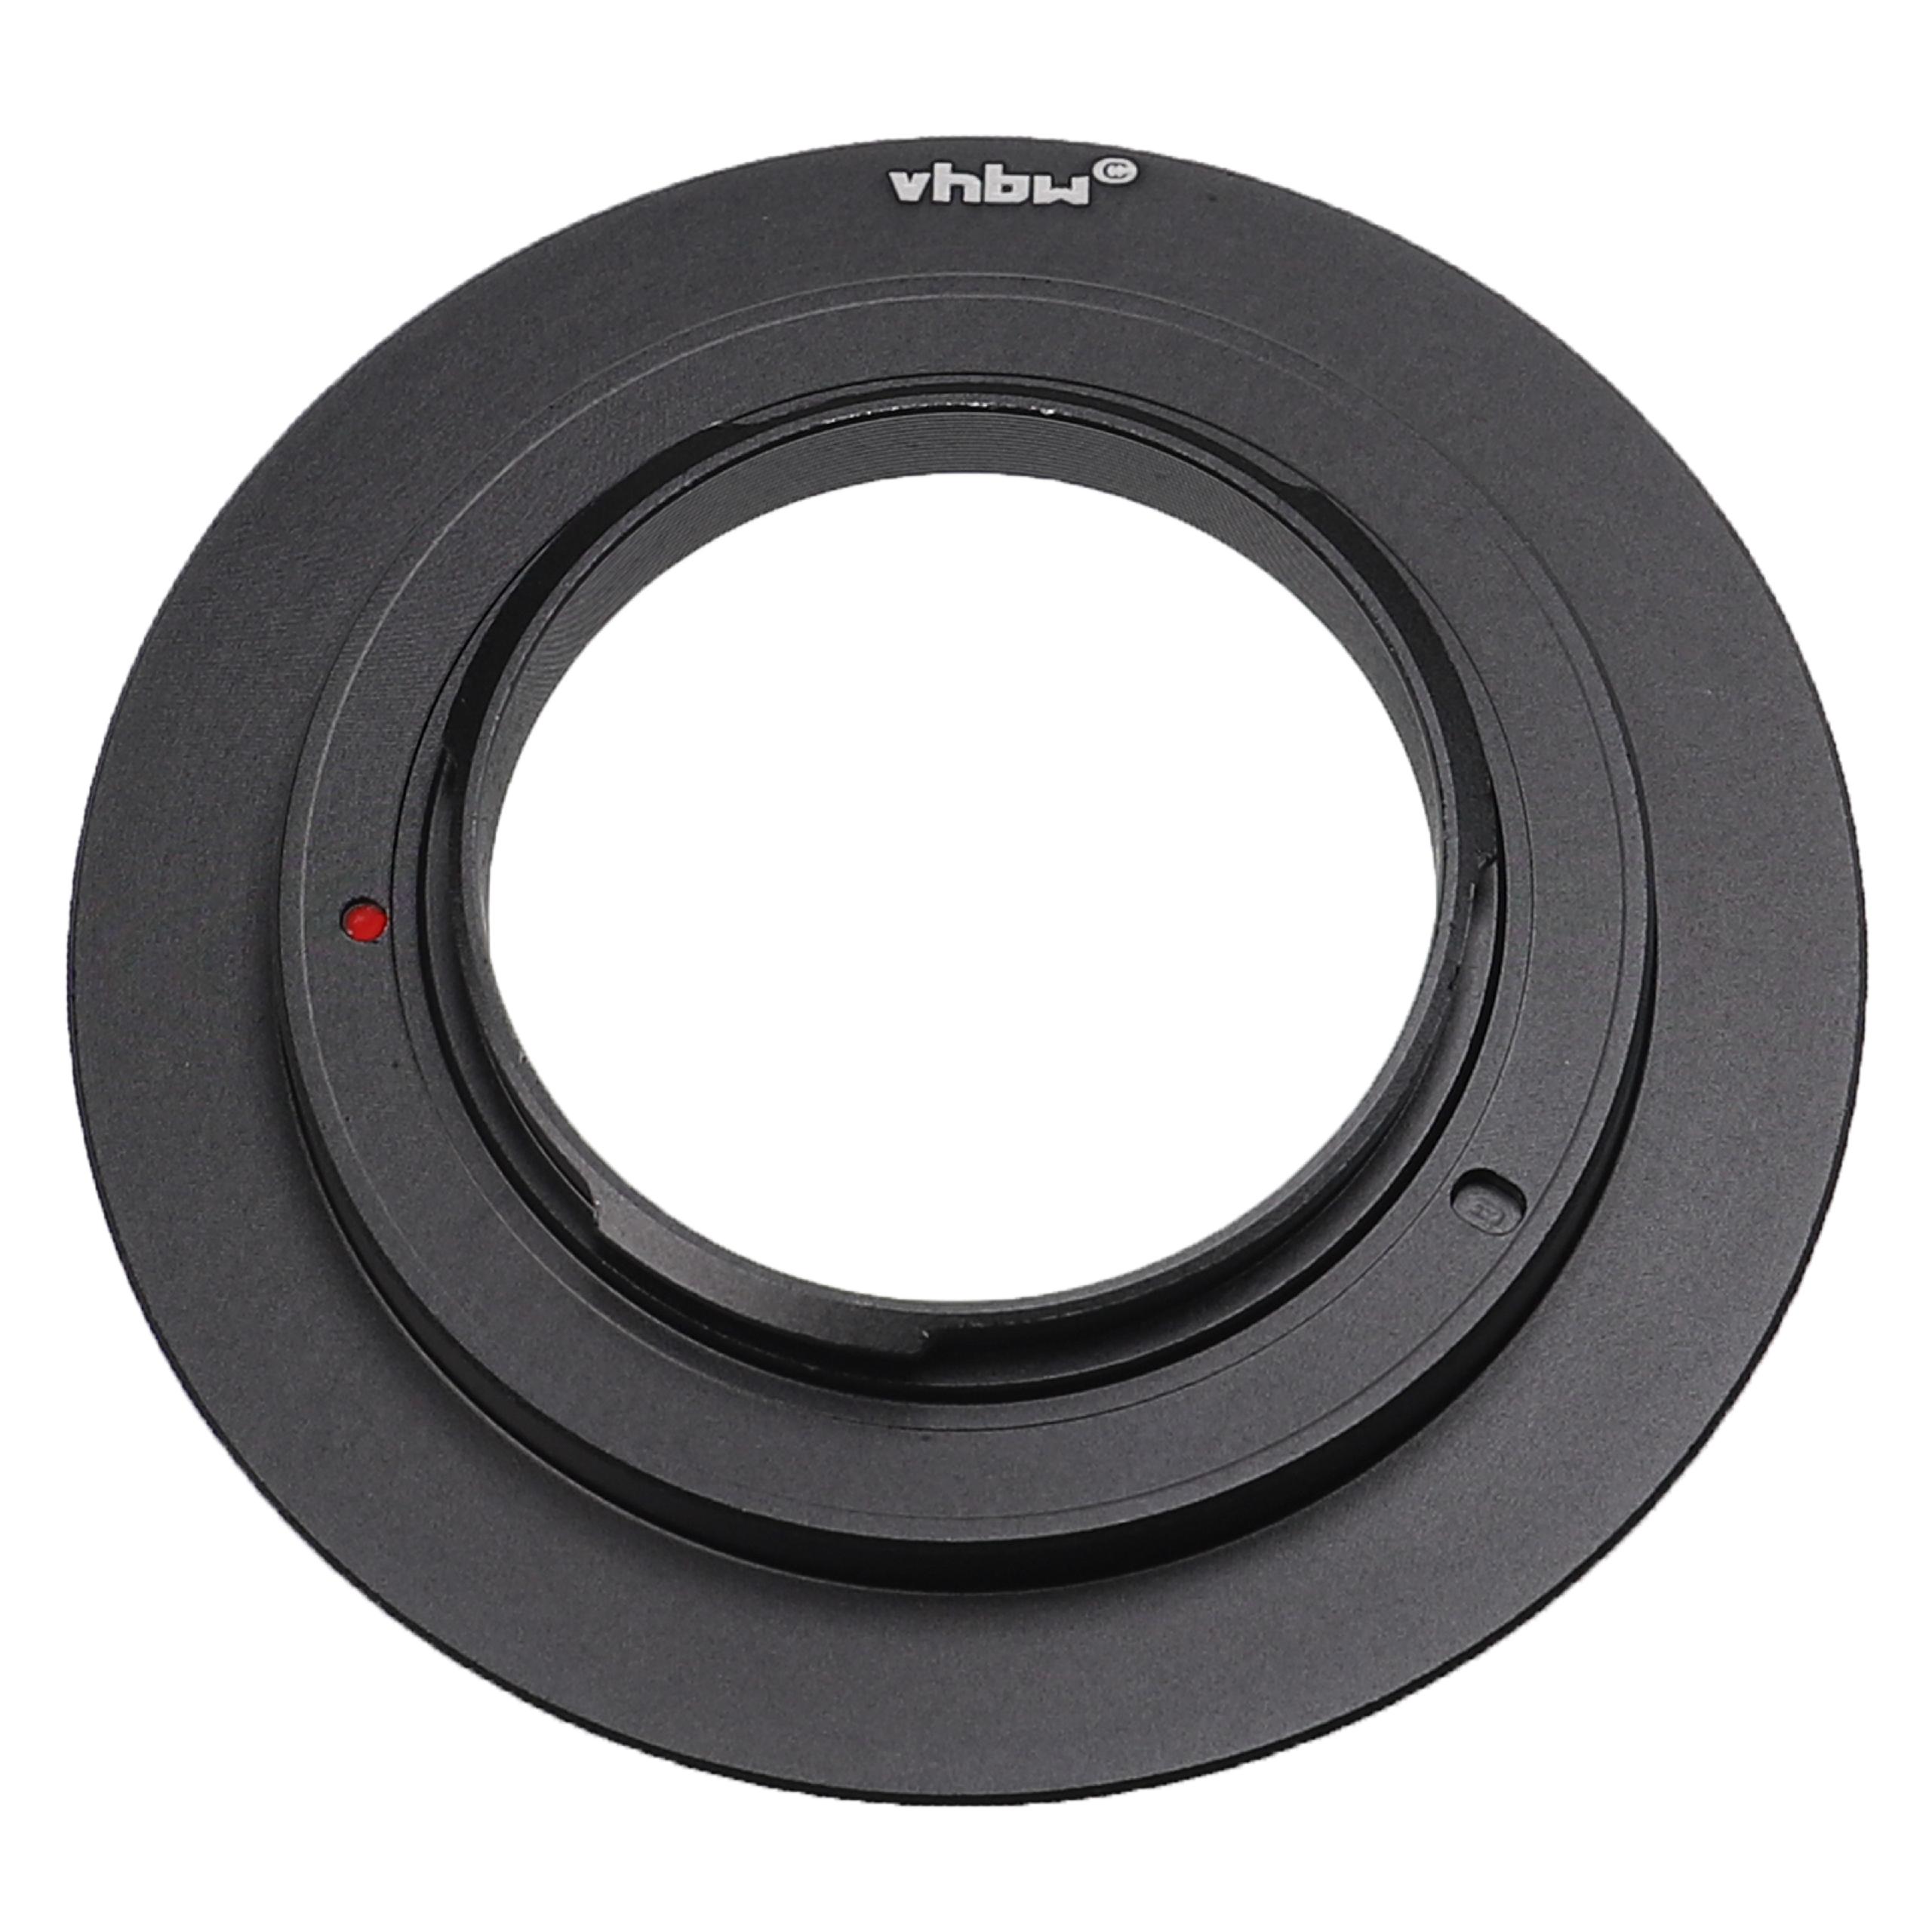 Retro adattatore da 77 mm per fotocamera, obiettivi Sony NEX E-Mount